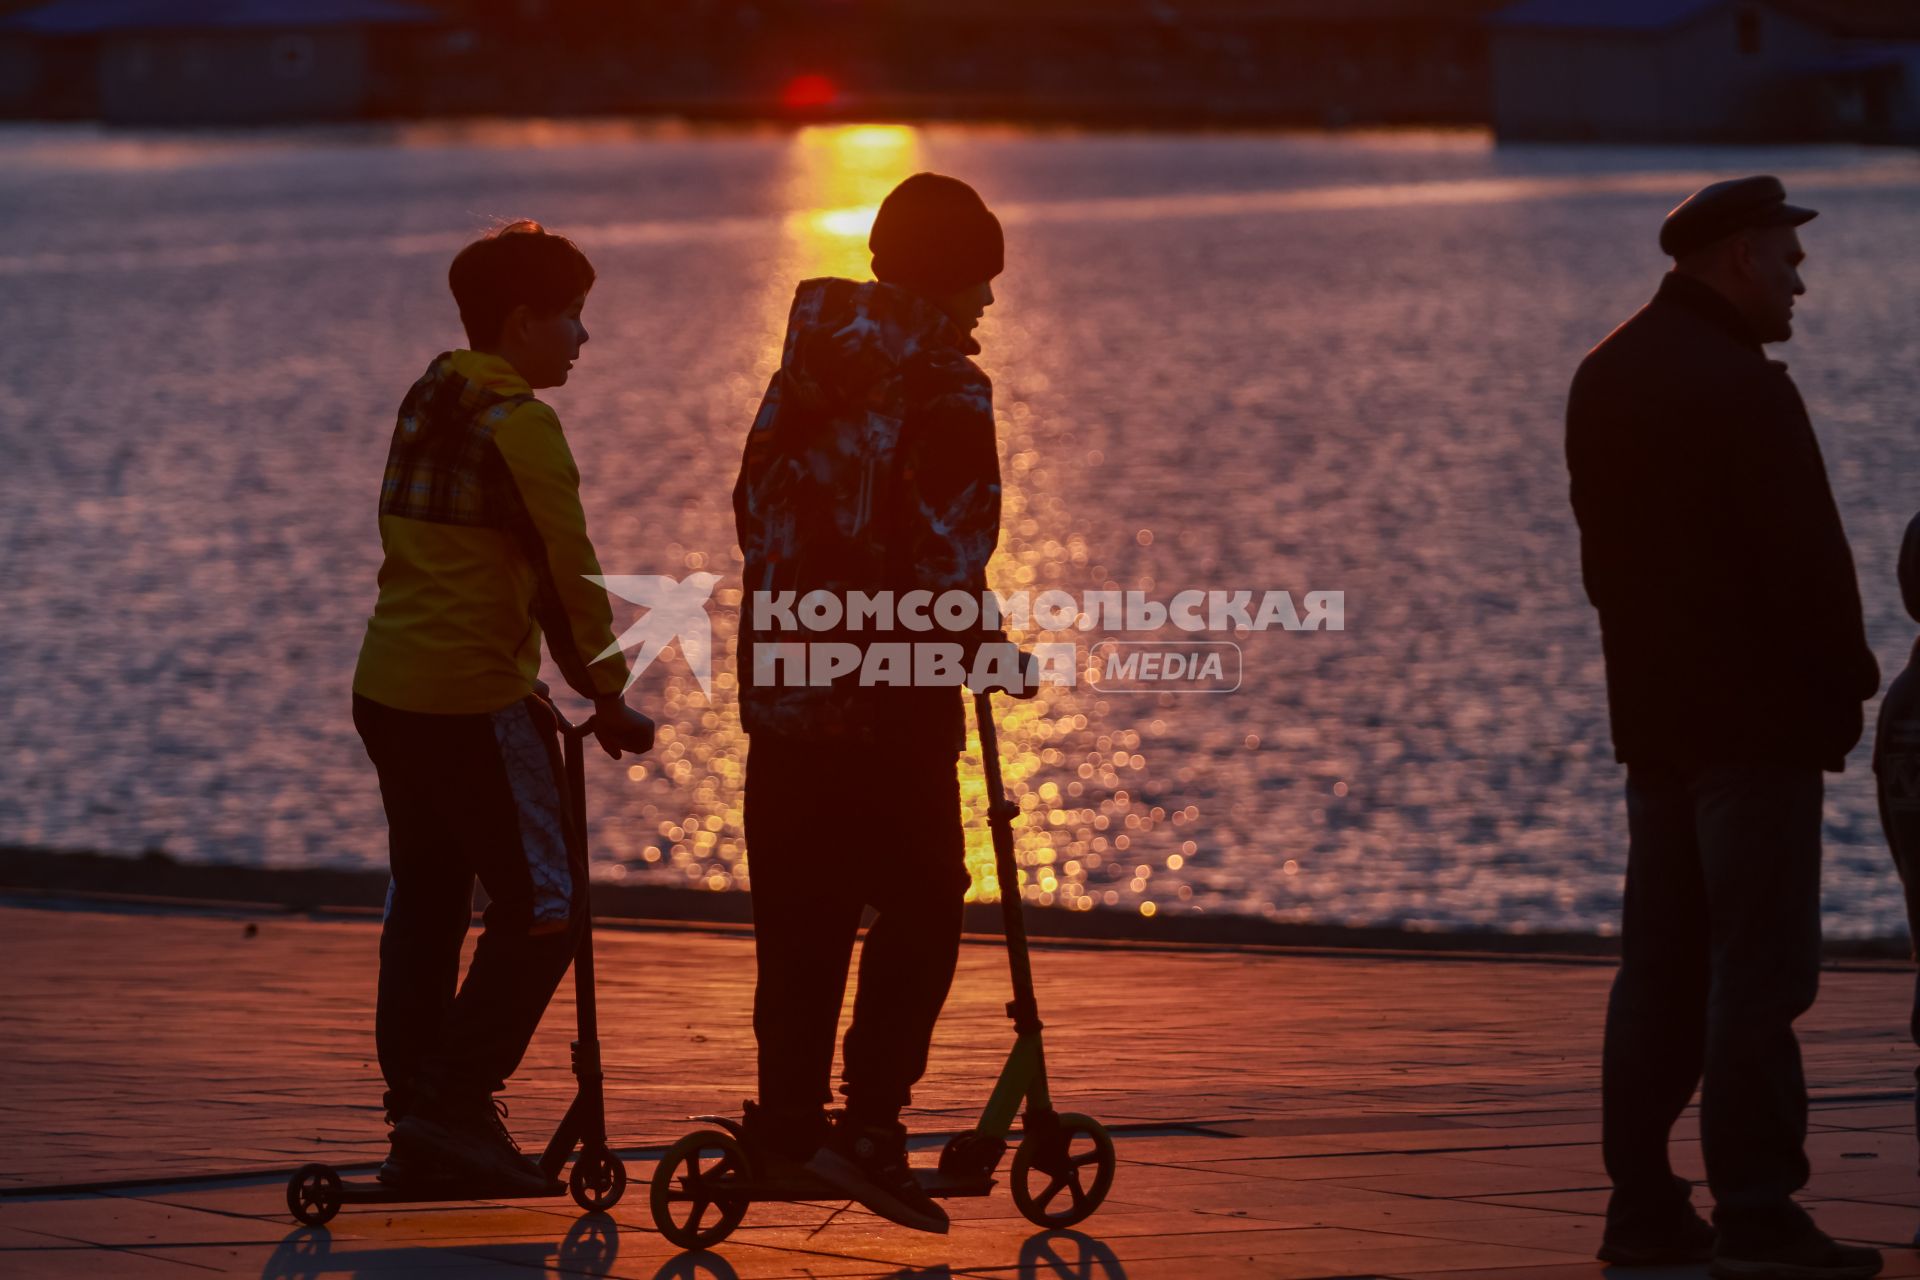 Красноярск. Подростки на самокатах на набережной во время заката.